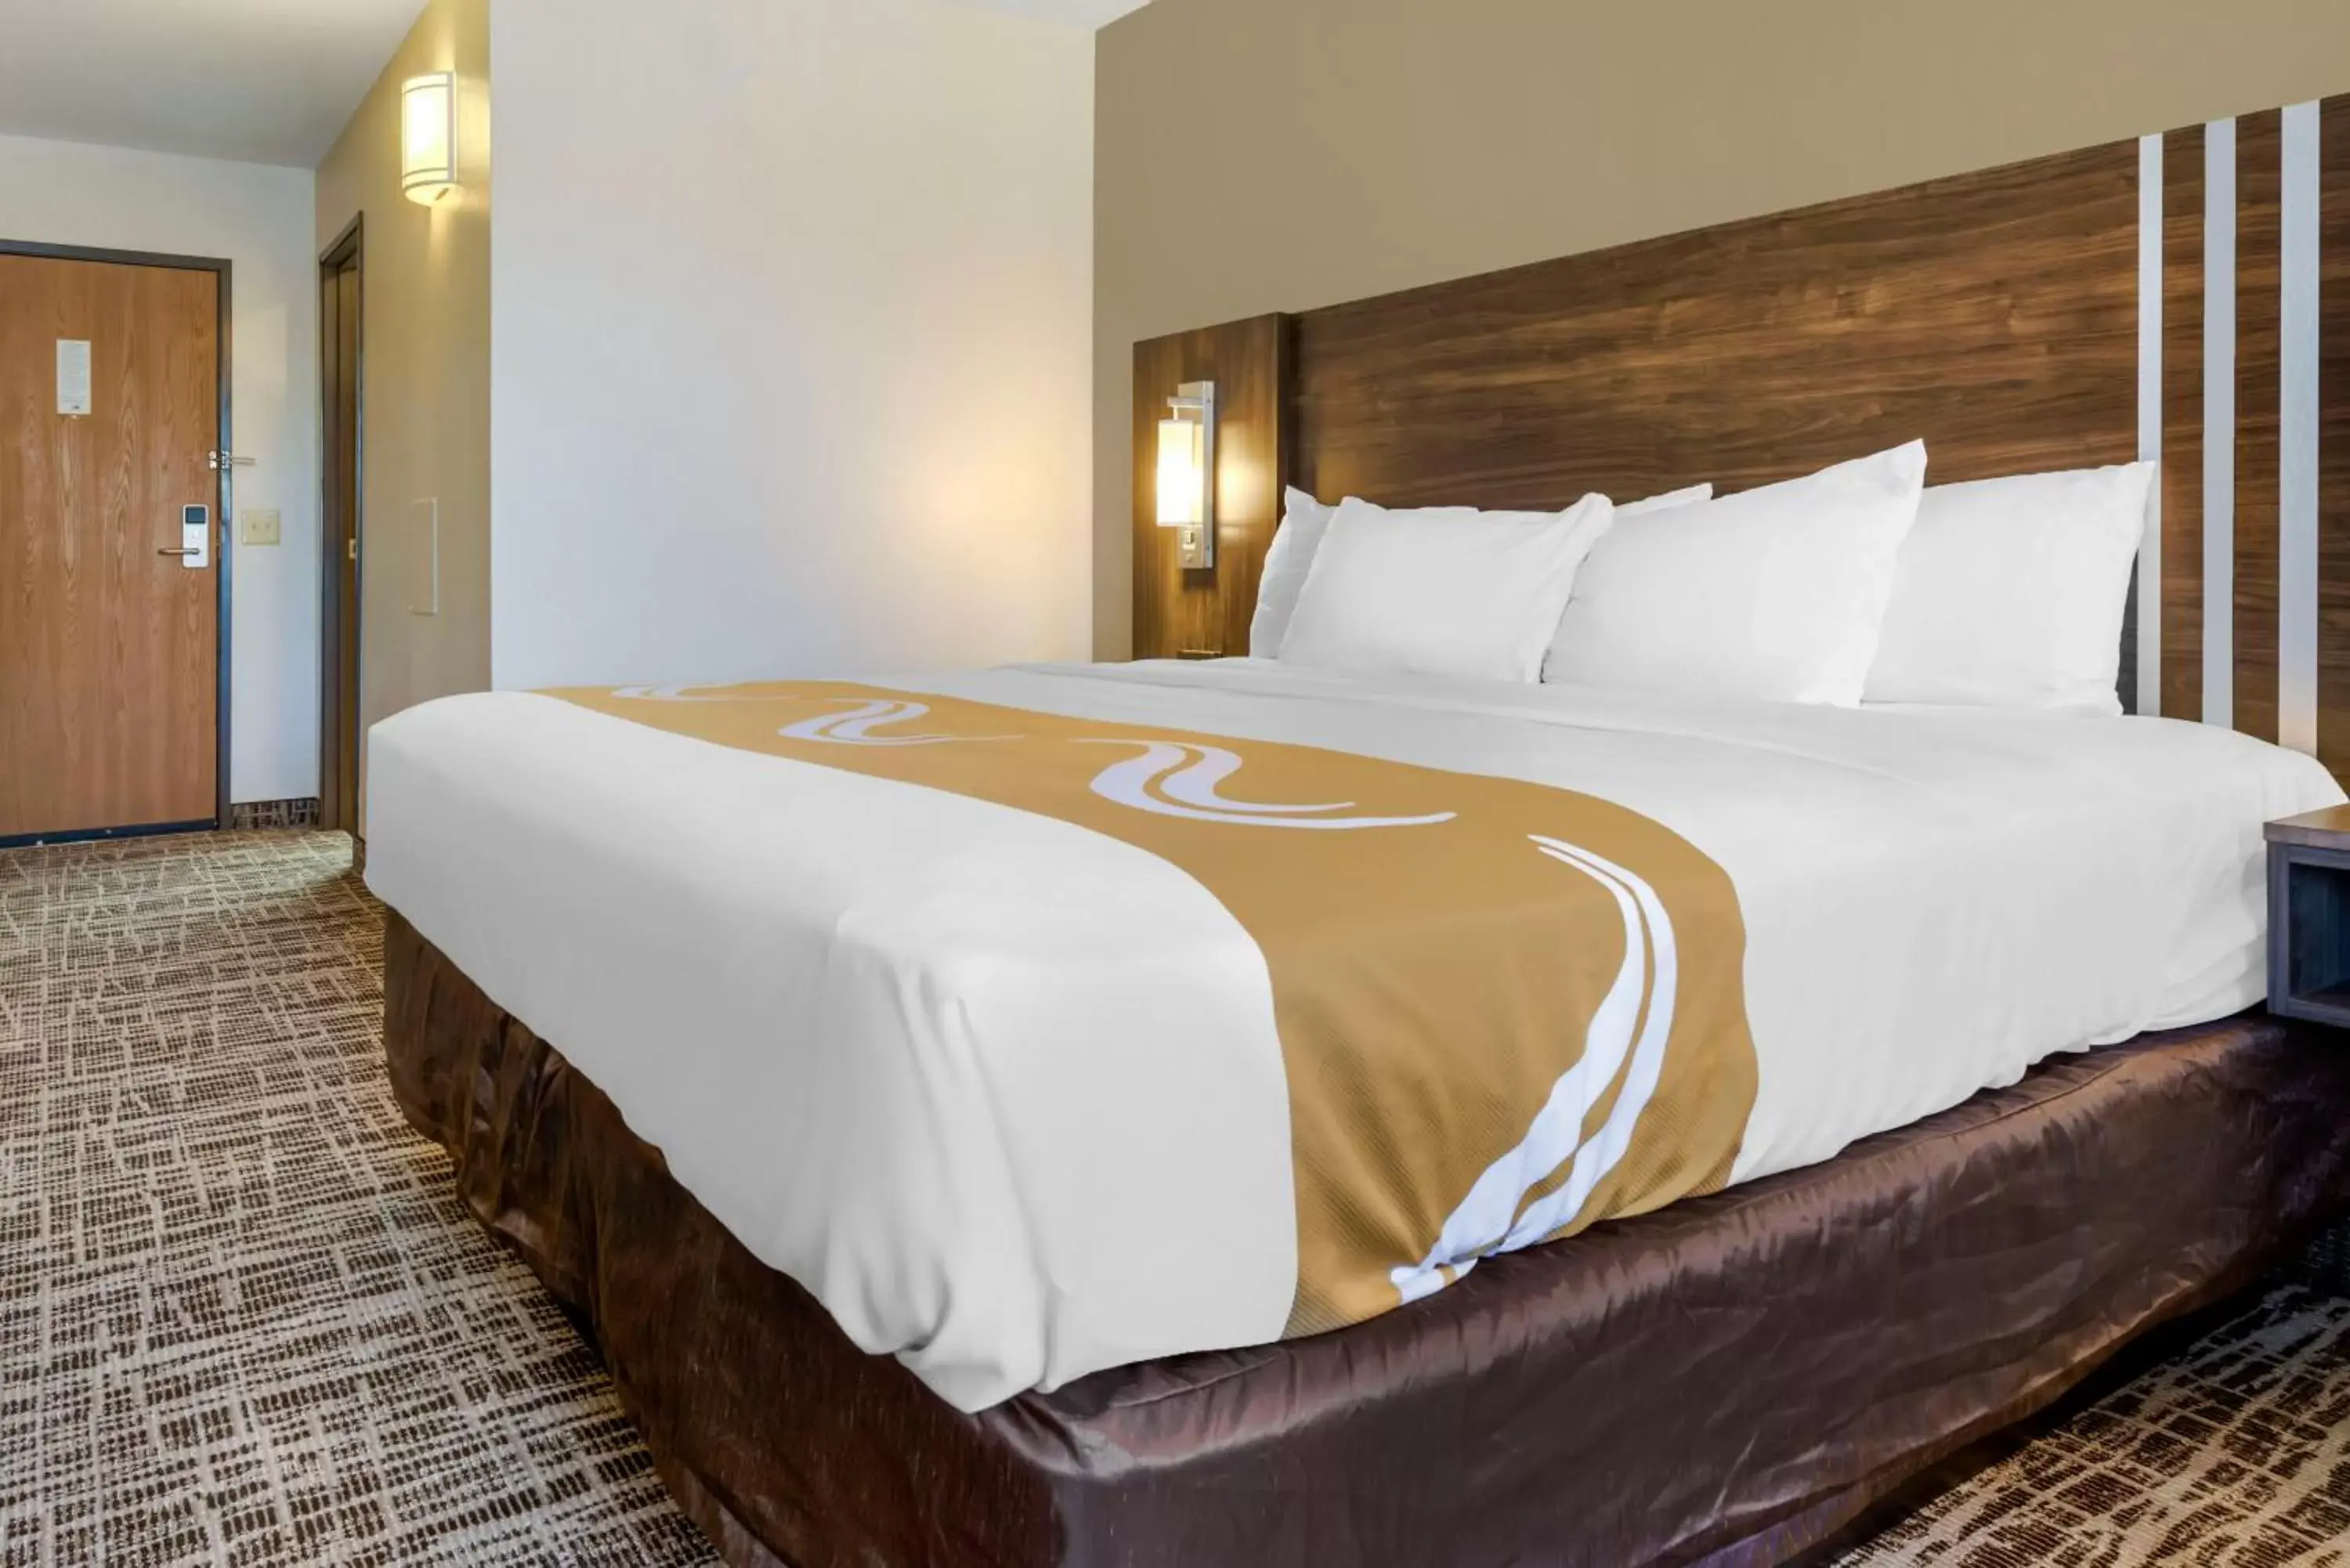 Bed in Quality Inn Saint Cloud